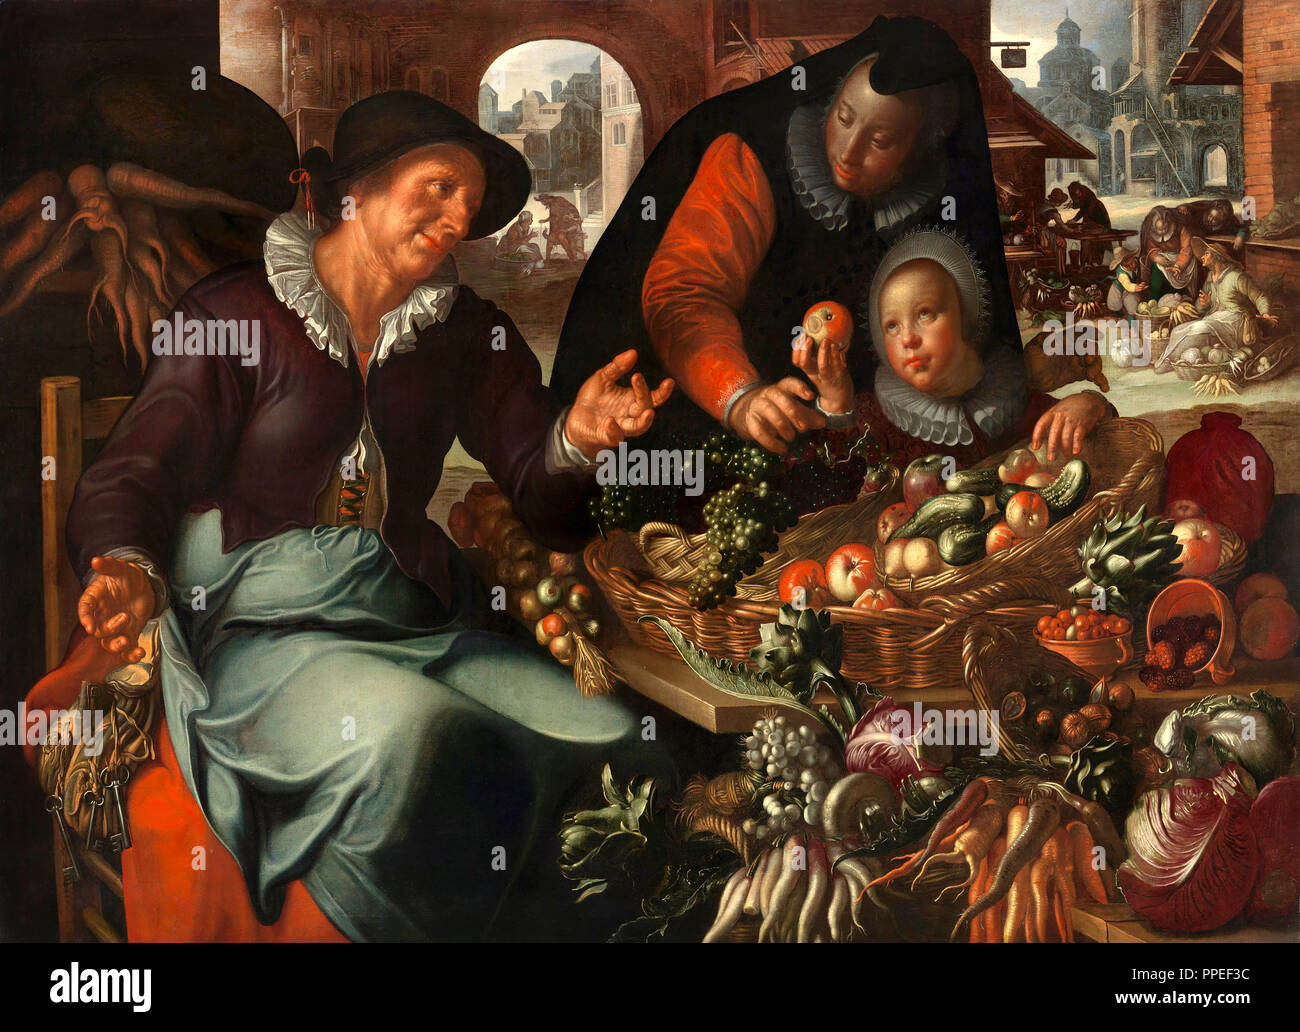 Joachim Wtewael, die Obst und Gemüse Verkäufer. Circa 1618. Öl auf Leinwand. Centraal Museum in Utrecht, Niederlande. Stockfoto